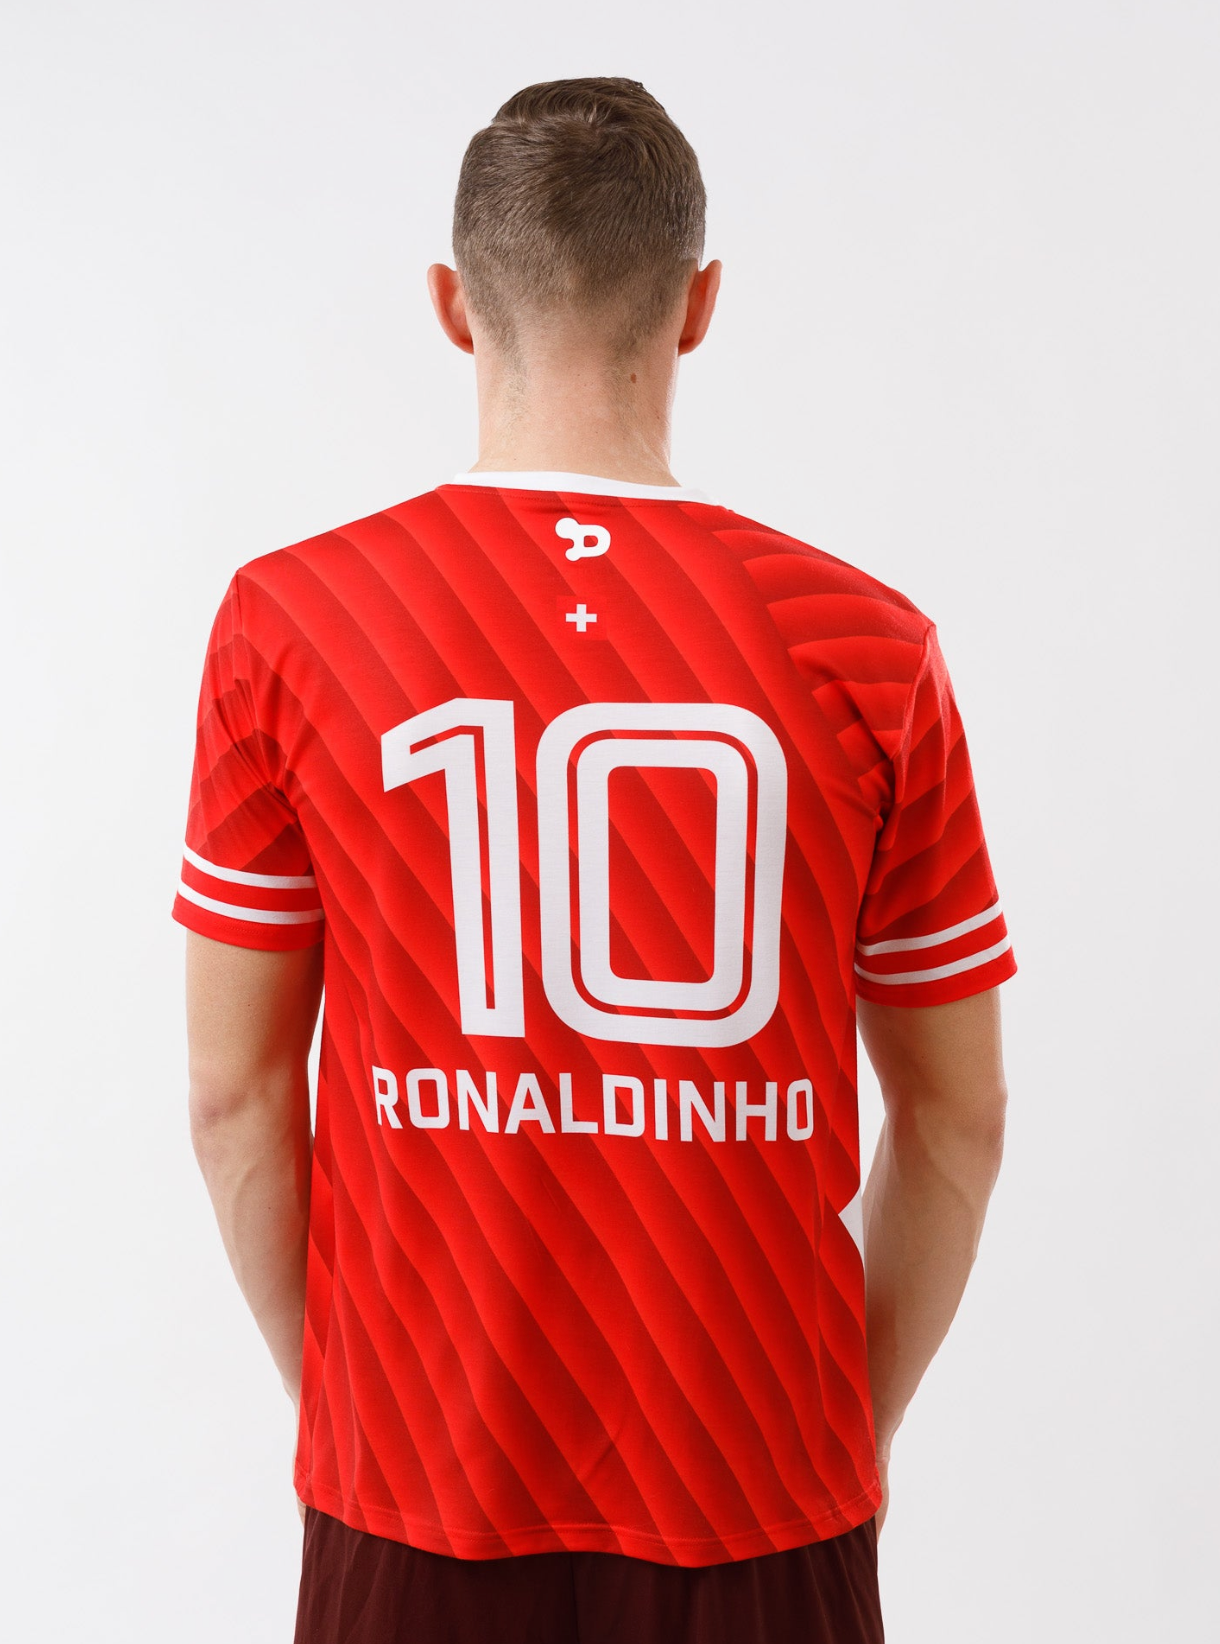 Ronaldinho Switzerland Jersey/Camisa